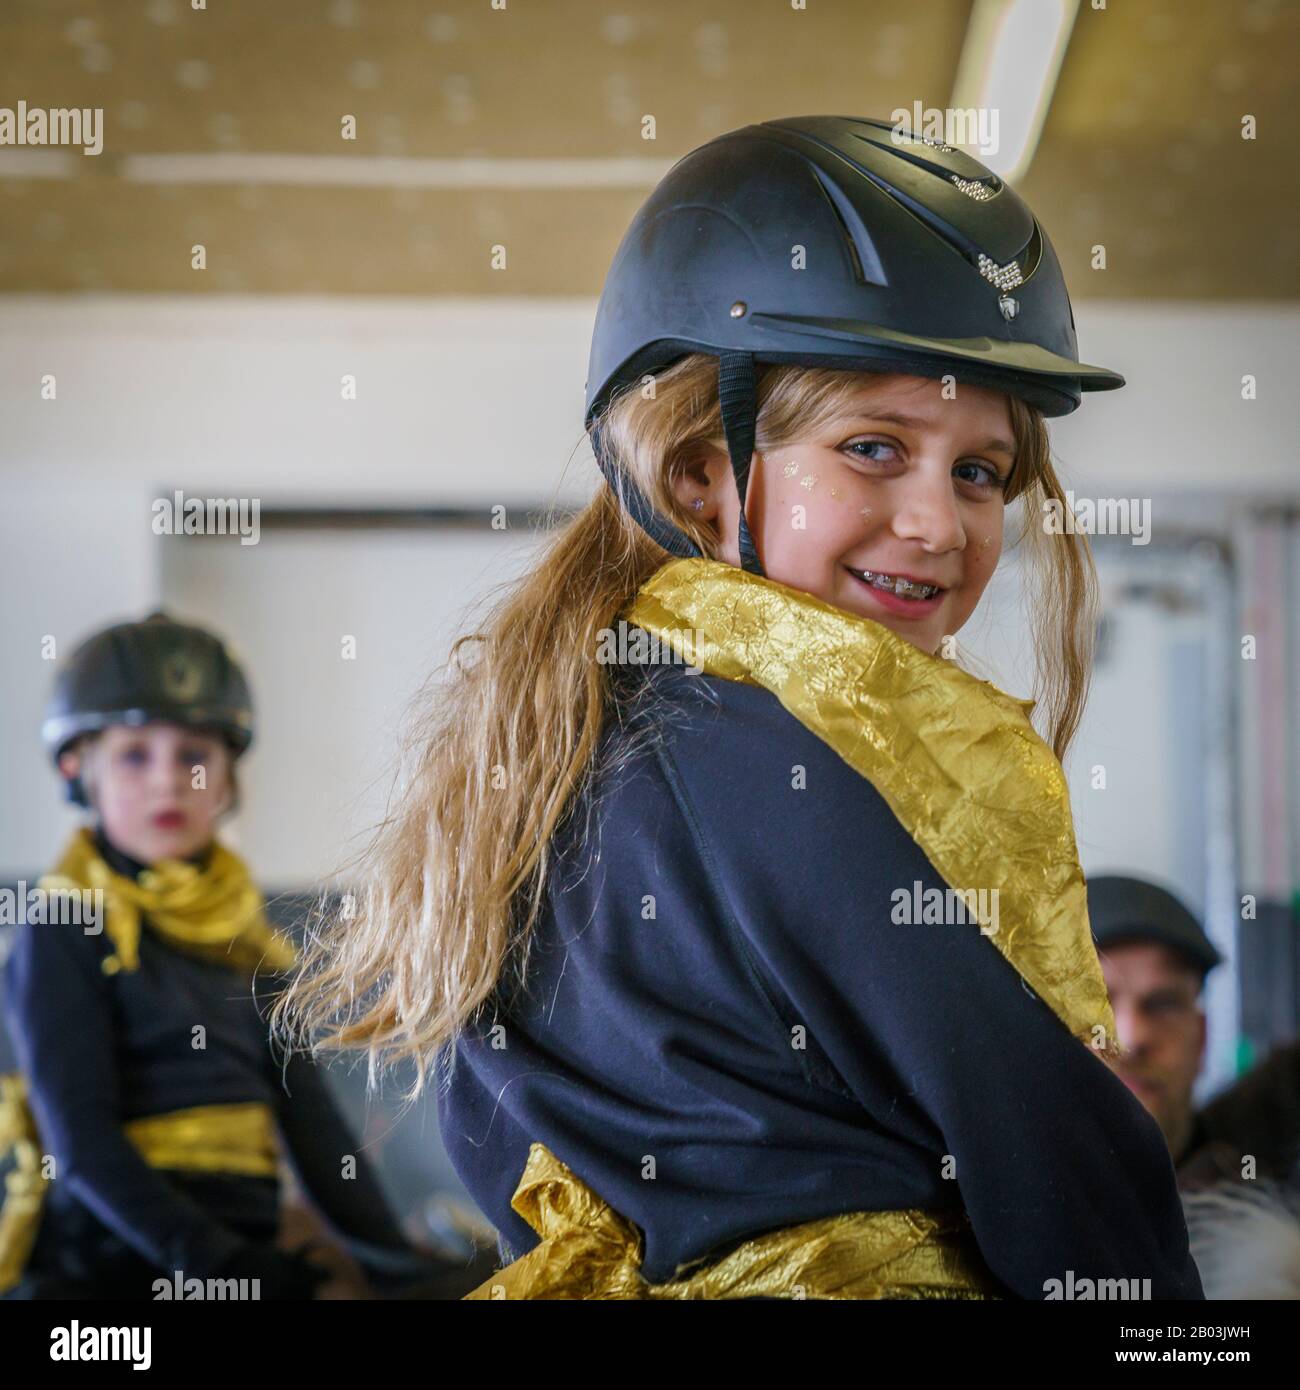 Girl on horseback wearing a helmet, Reykjavik, Iceland Stock Photo